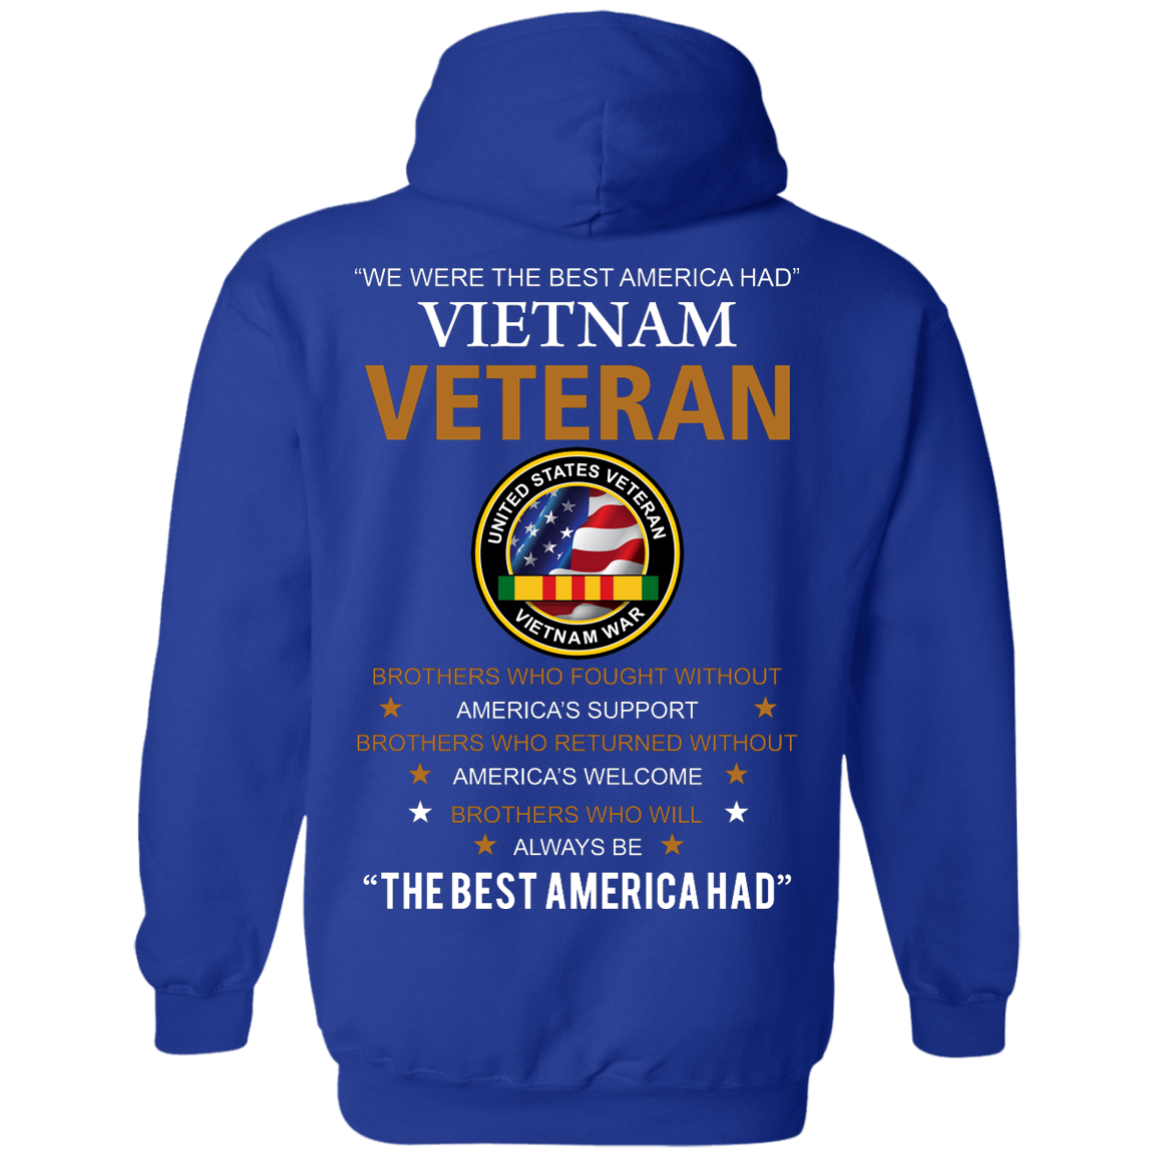 United states veteran vietnam war Shirts - We were best America had ...